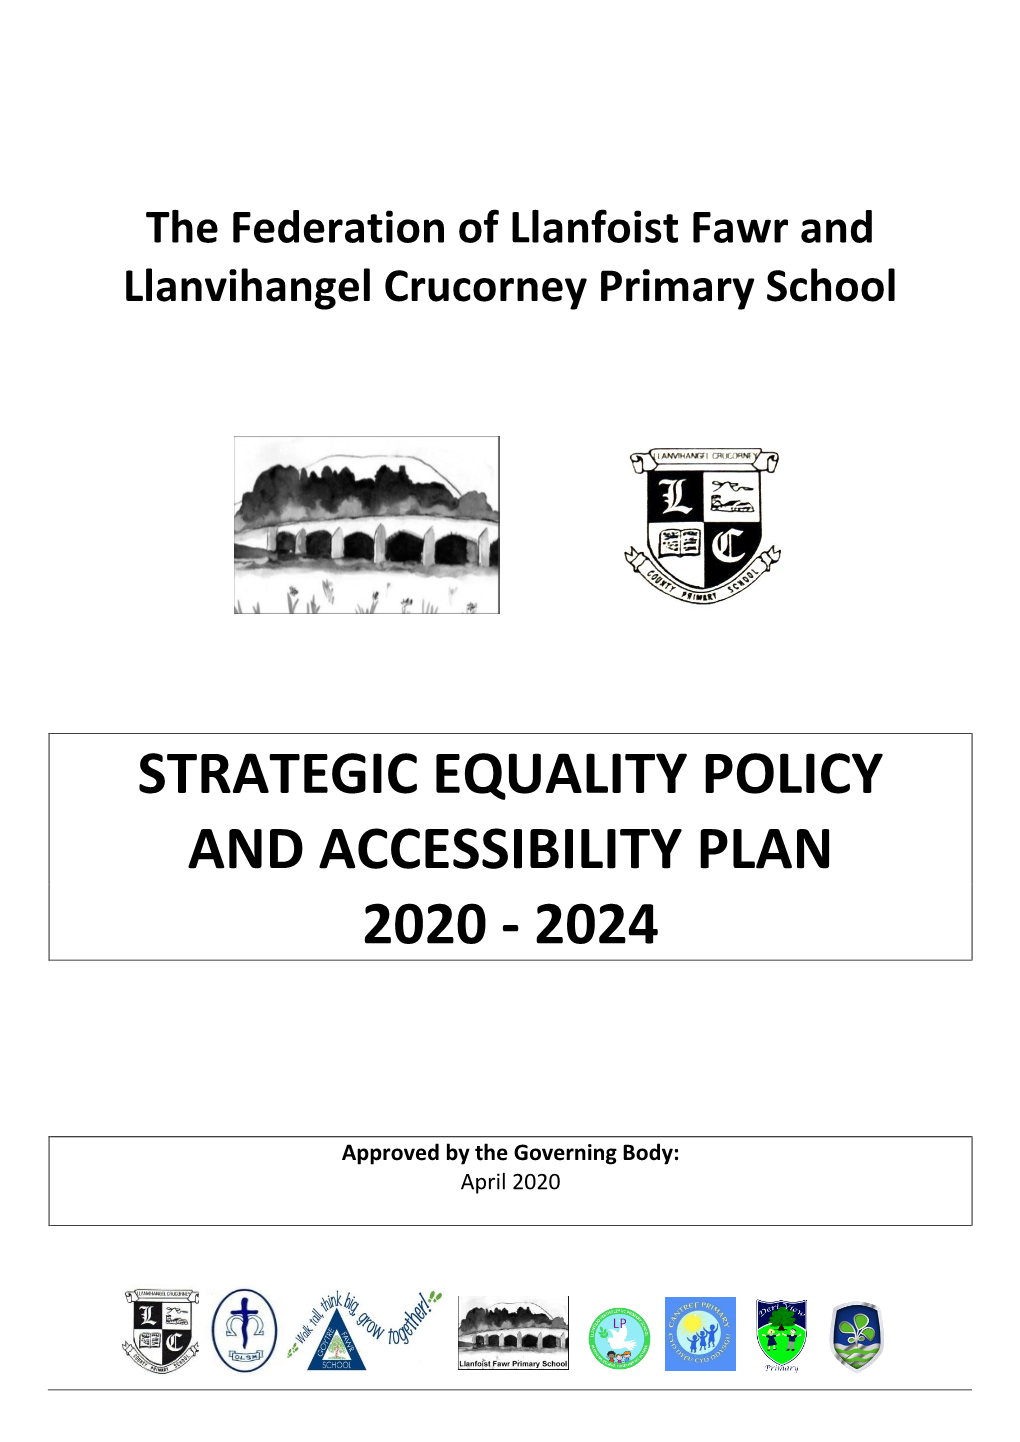 The Federation of Llanfoist Fawr and Llanvihangel Crucorney Primary School